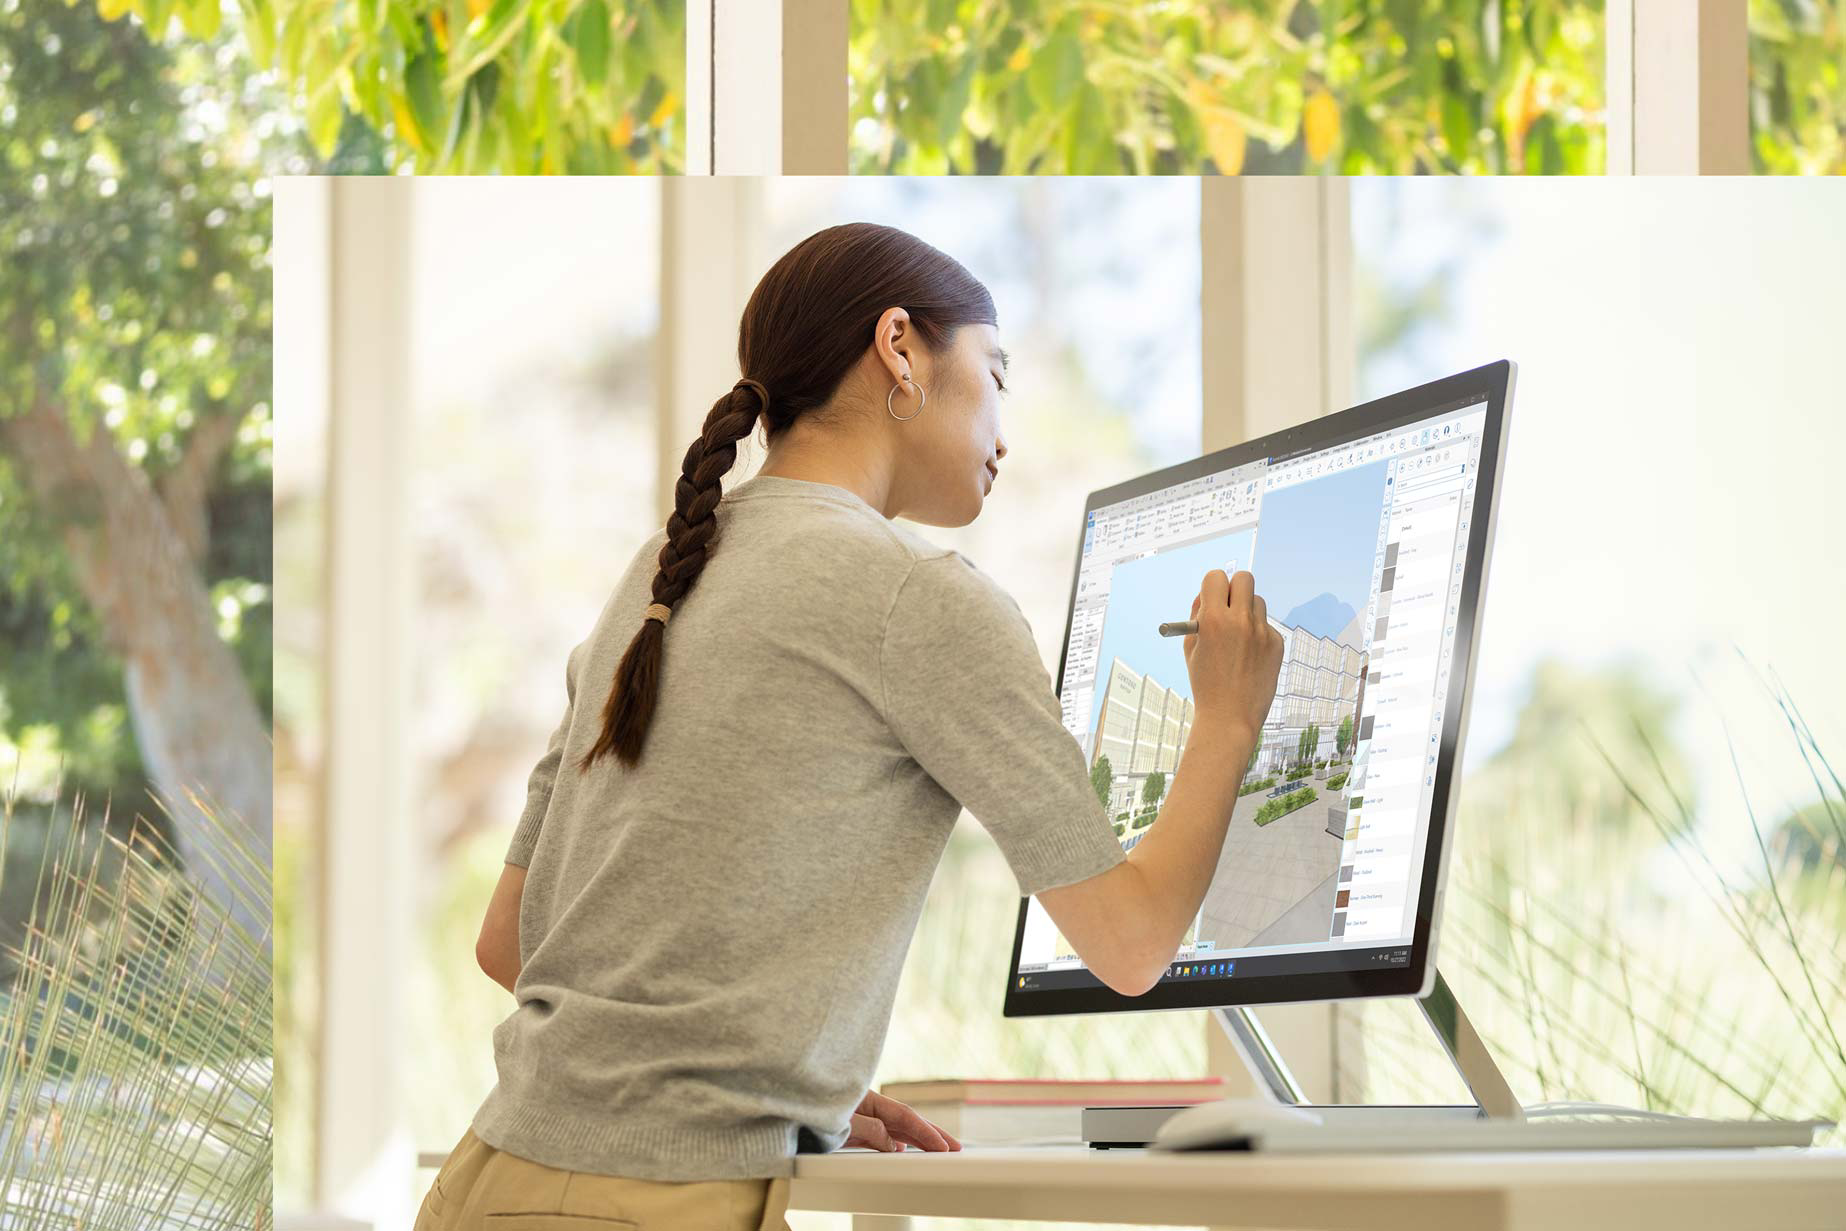 街並みの一部が見える窓の前で Surface Studio 2+ に向かって座る男性。